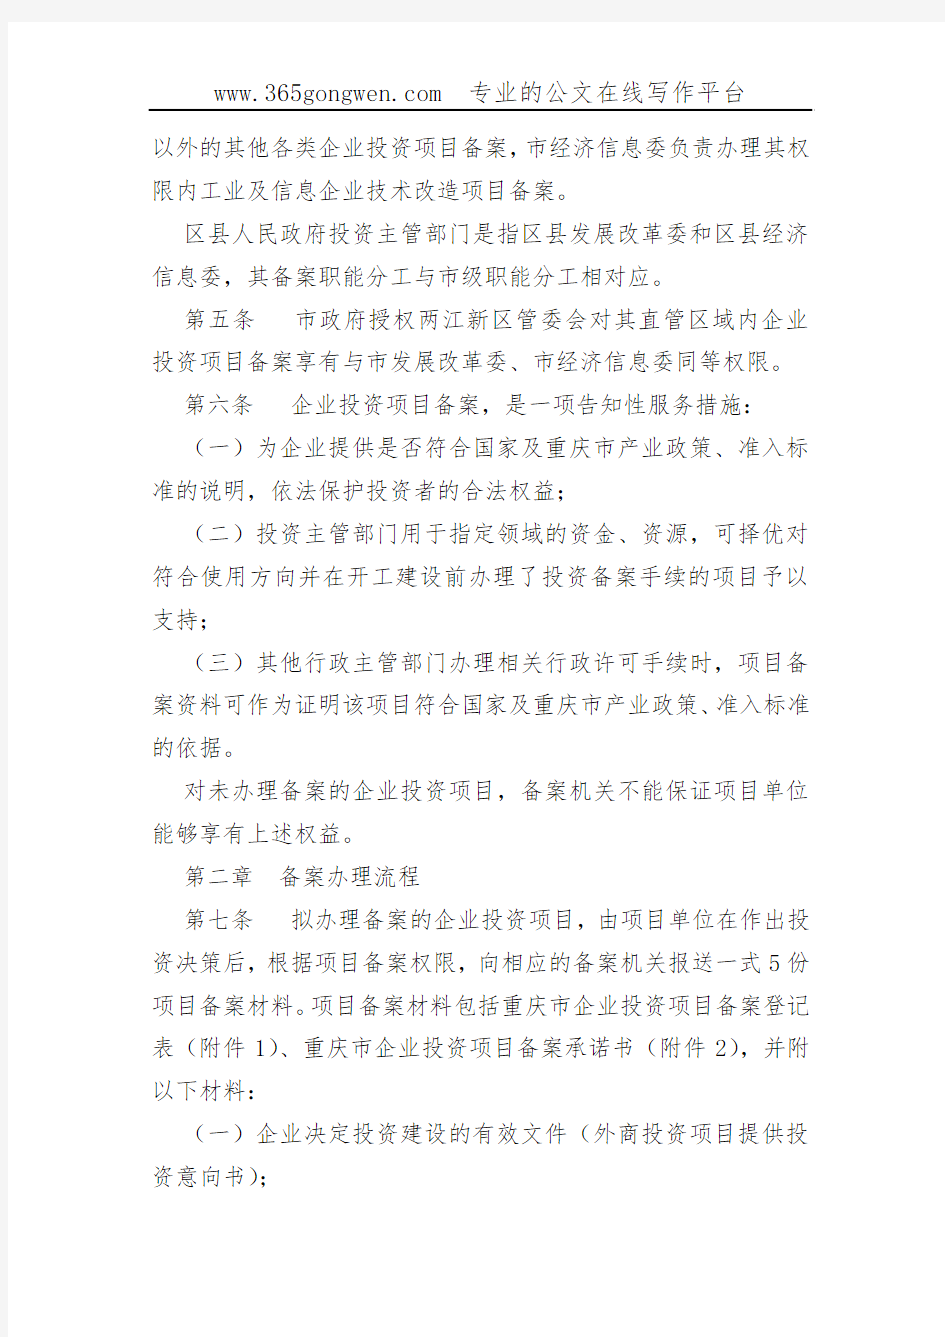 【发改办法】重庆市企业投资项目备案管理办法